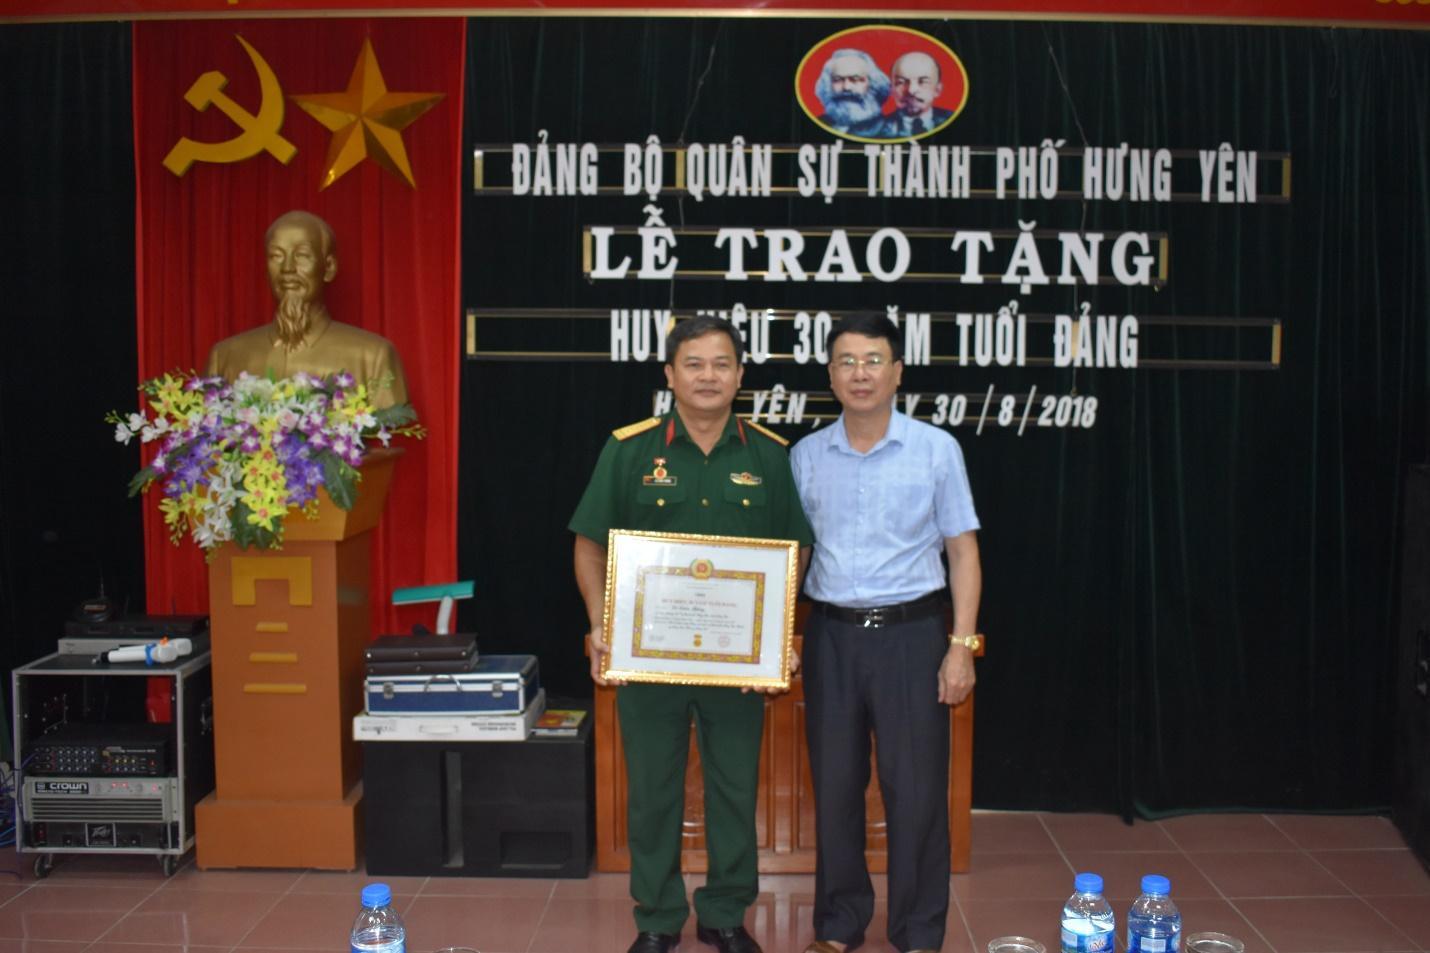 Bí thư Thành ủy Tạ Hồng Quảng trao huy hiệu 30 năm tuổi Đảng tại Đảng bộ quân sự thành phố